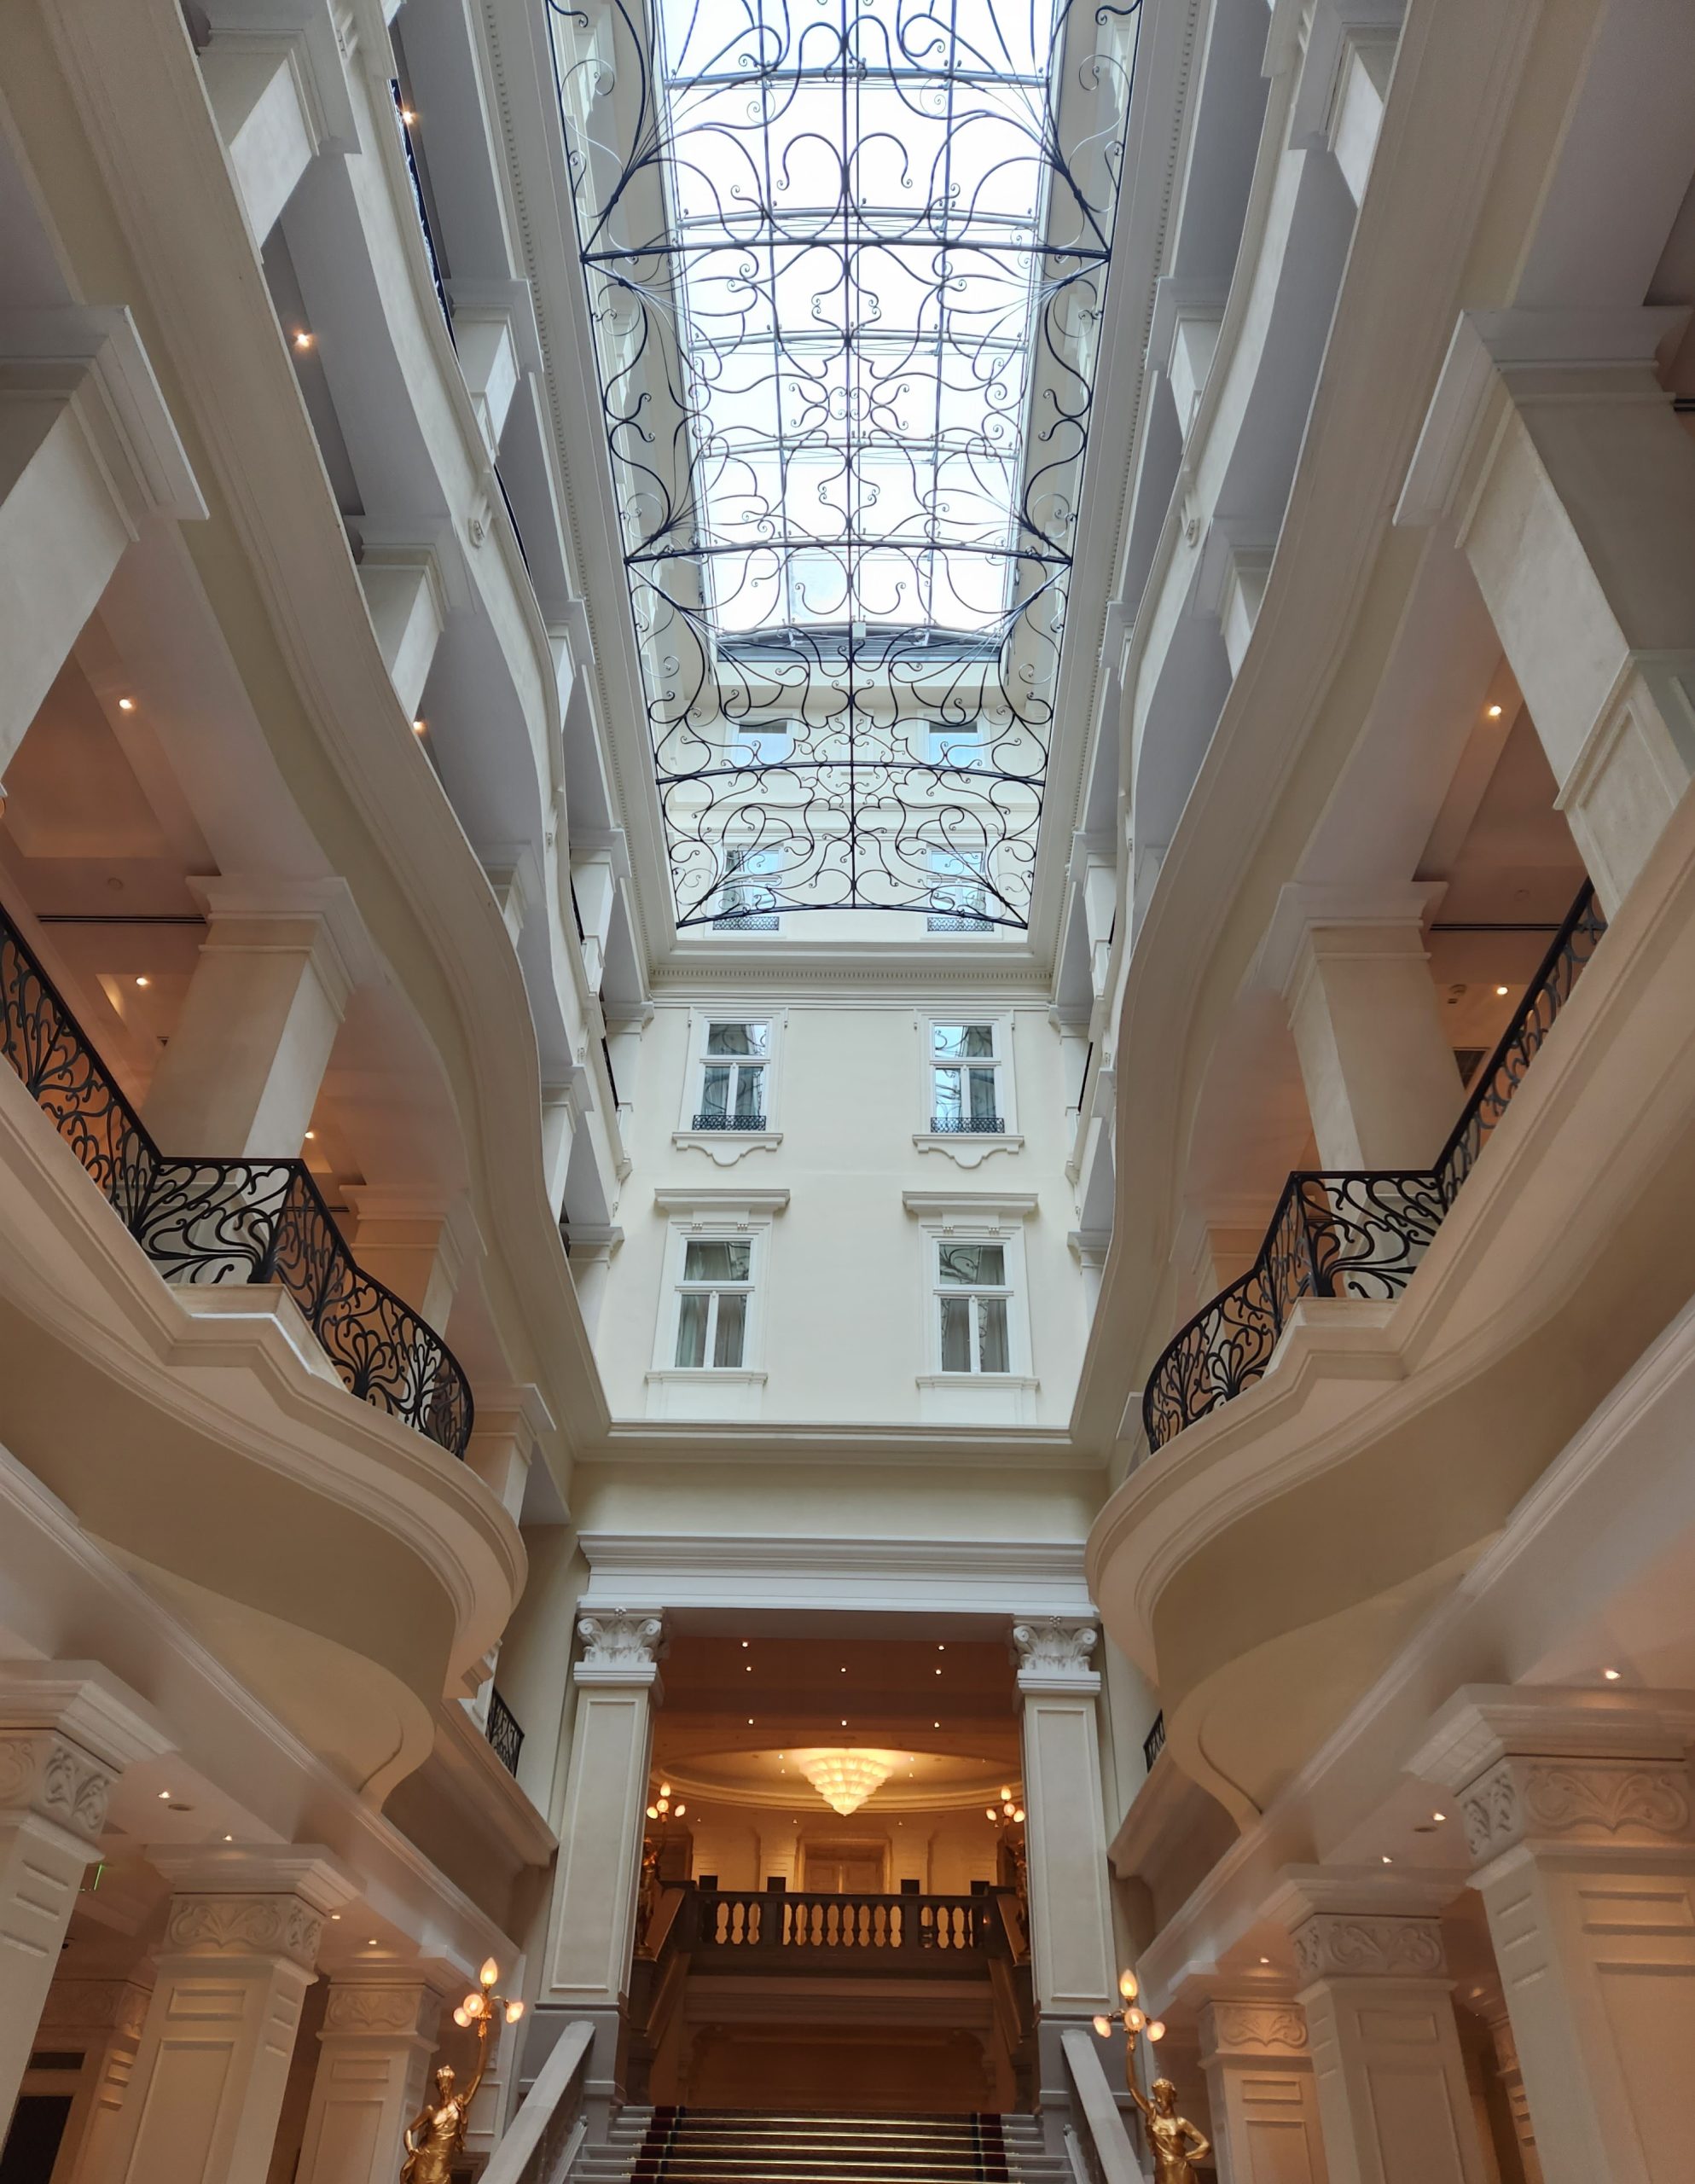 A view of the Corinthia’s elegant lobby